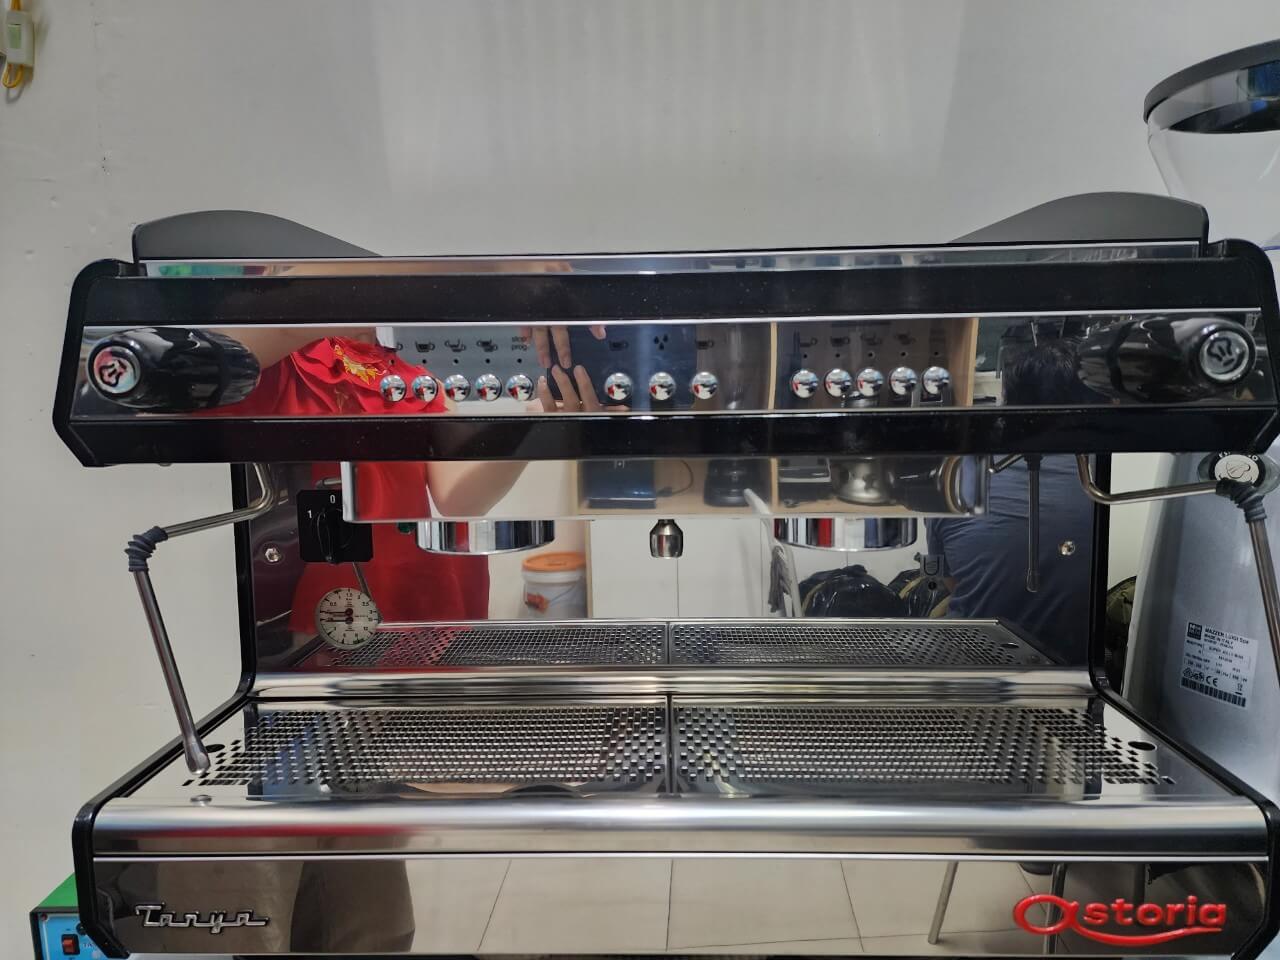 Thanh lý máy pha cà phê Astoria Tanya 2 Group hàng trưng bày